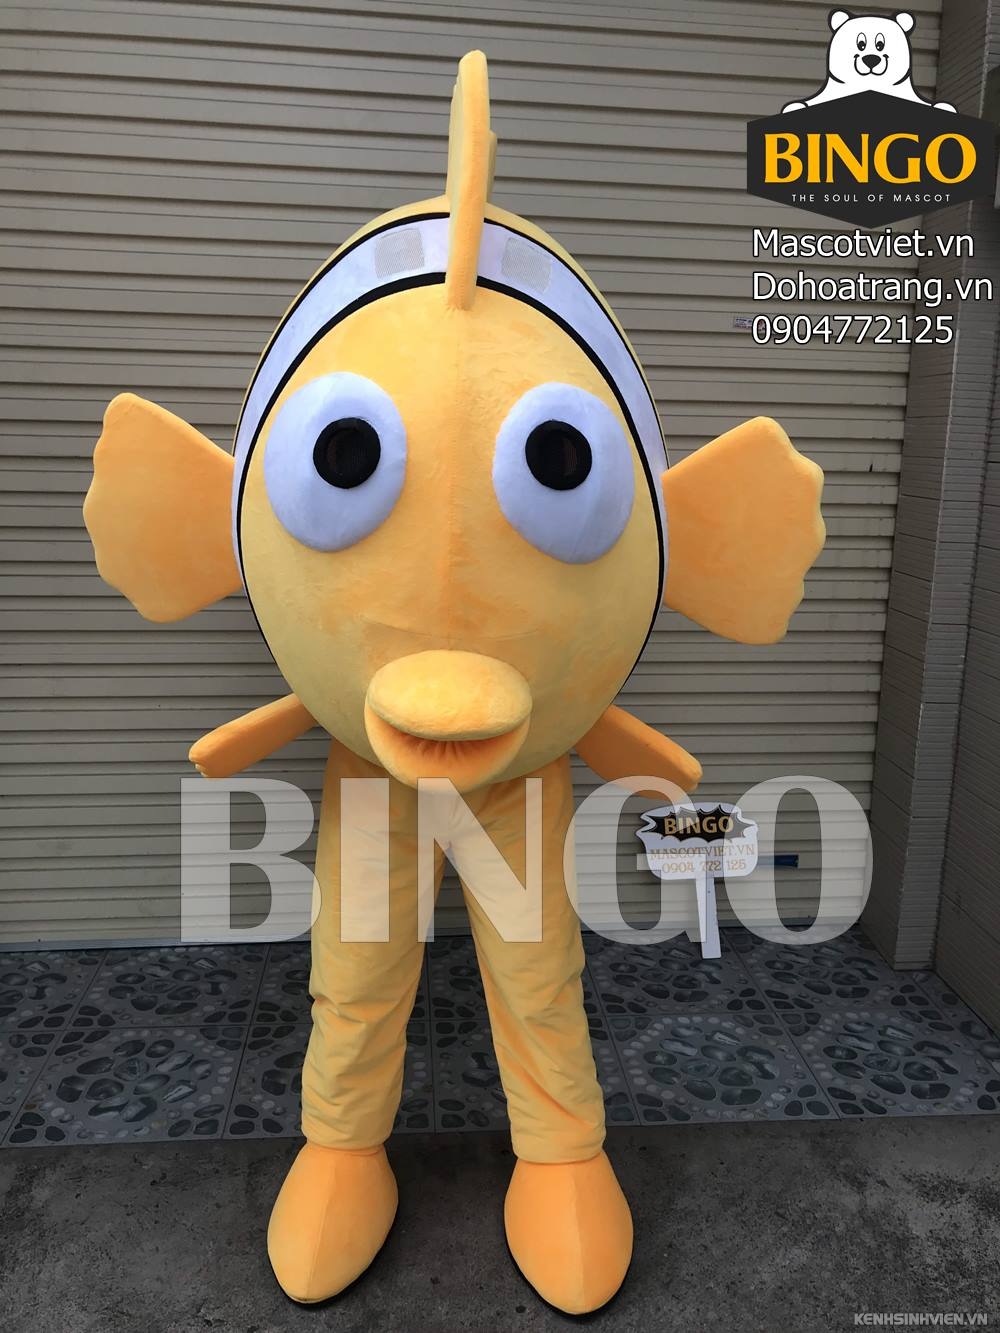 mascot-con-ca-02-bingo-costumes-0904772125.jpg